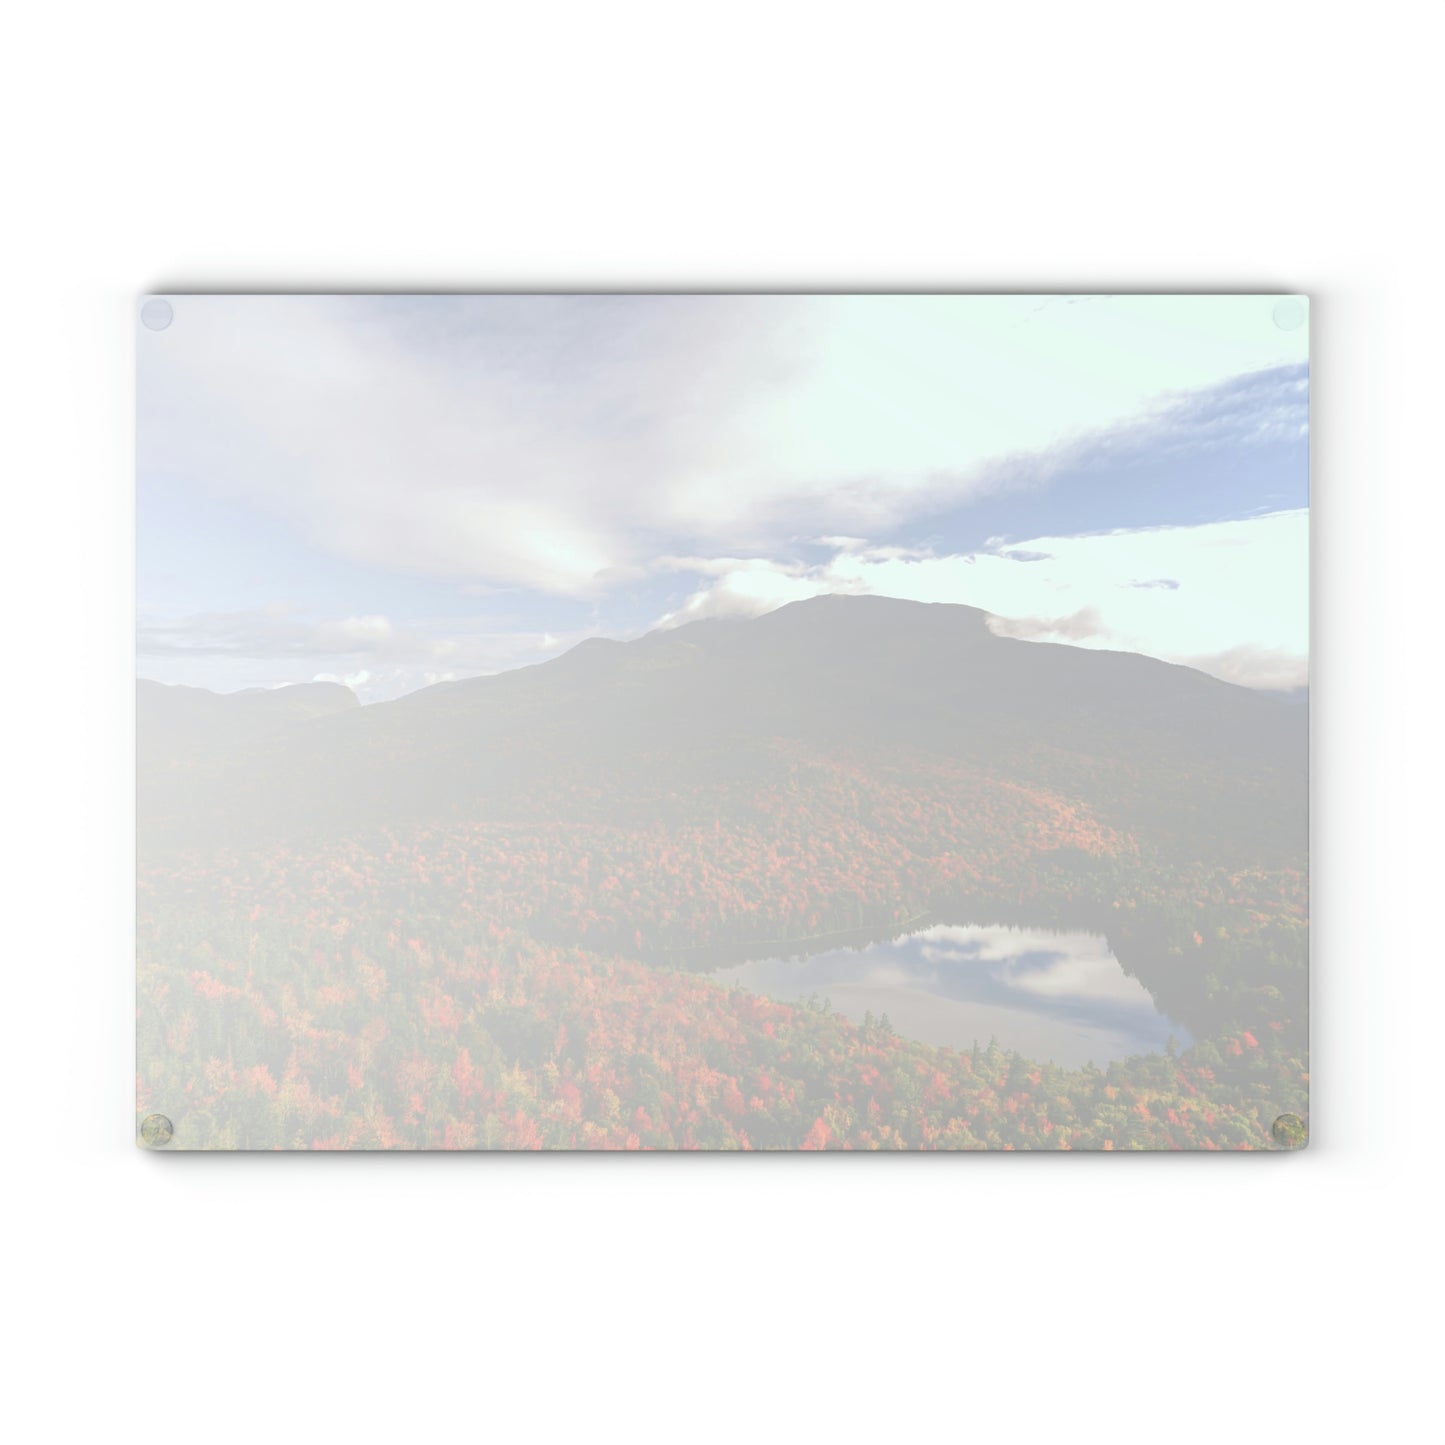 Glass Cutting Board - Heart Lake, Autumn